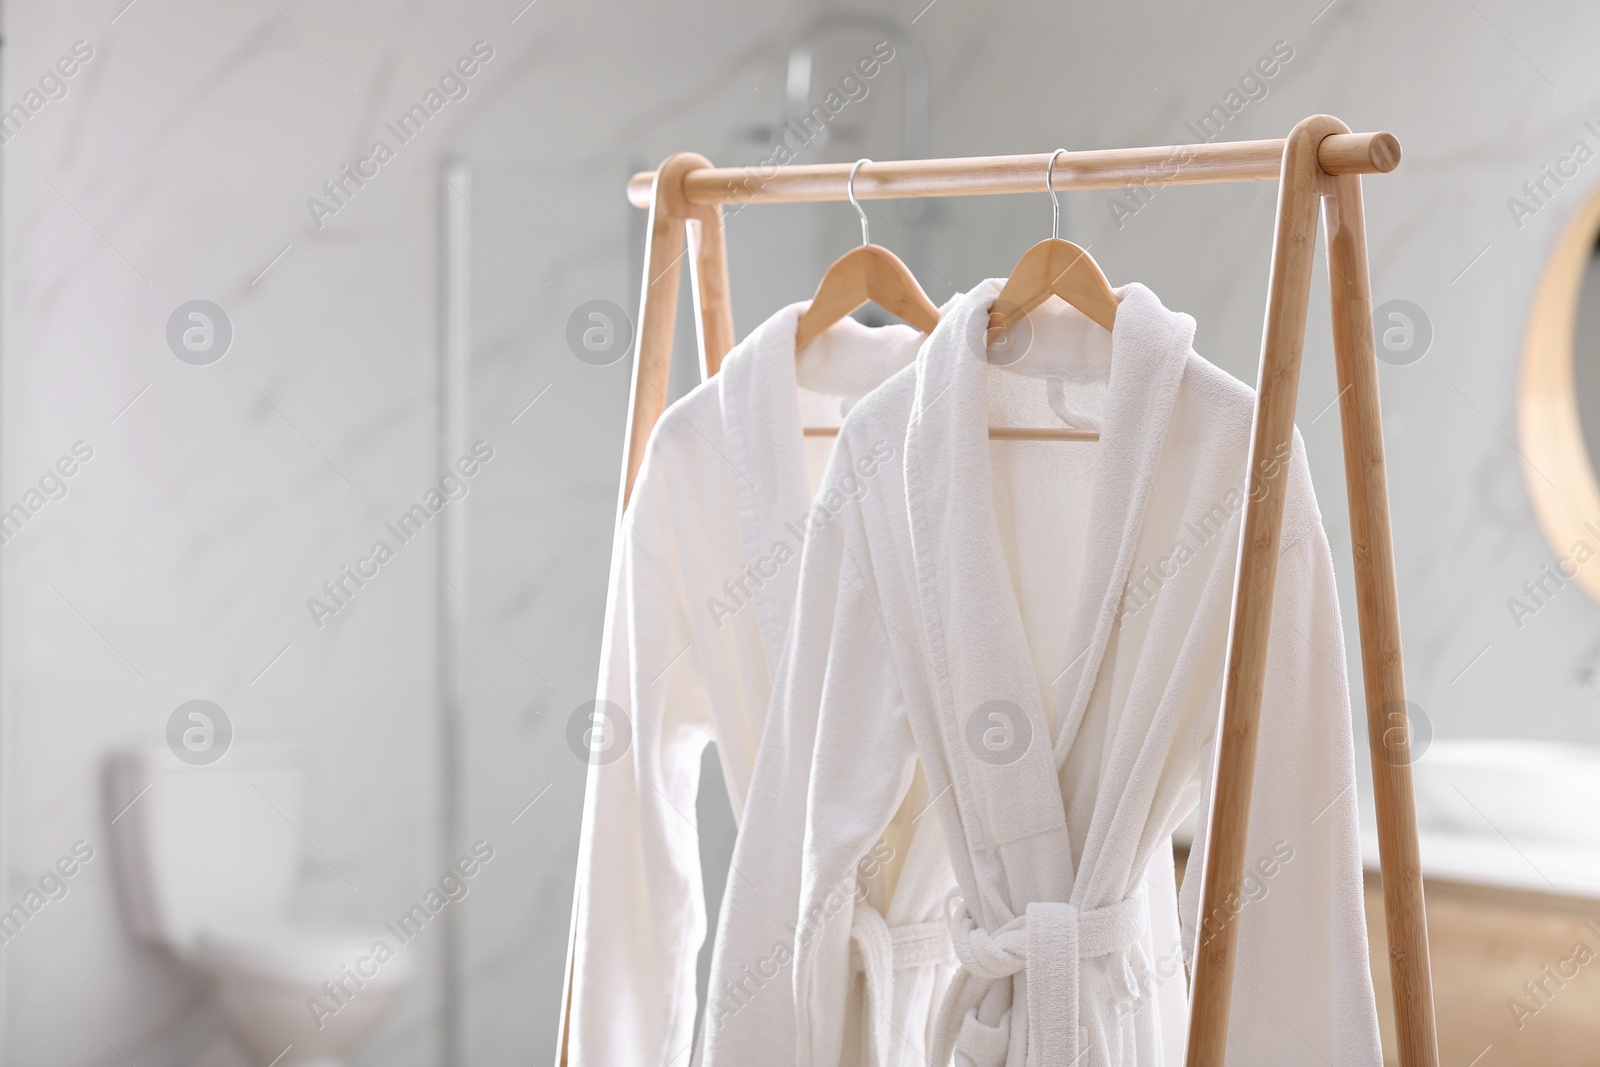 Photo of Fresh white bathrobes hanging on rack indoors